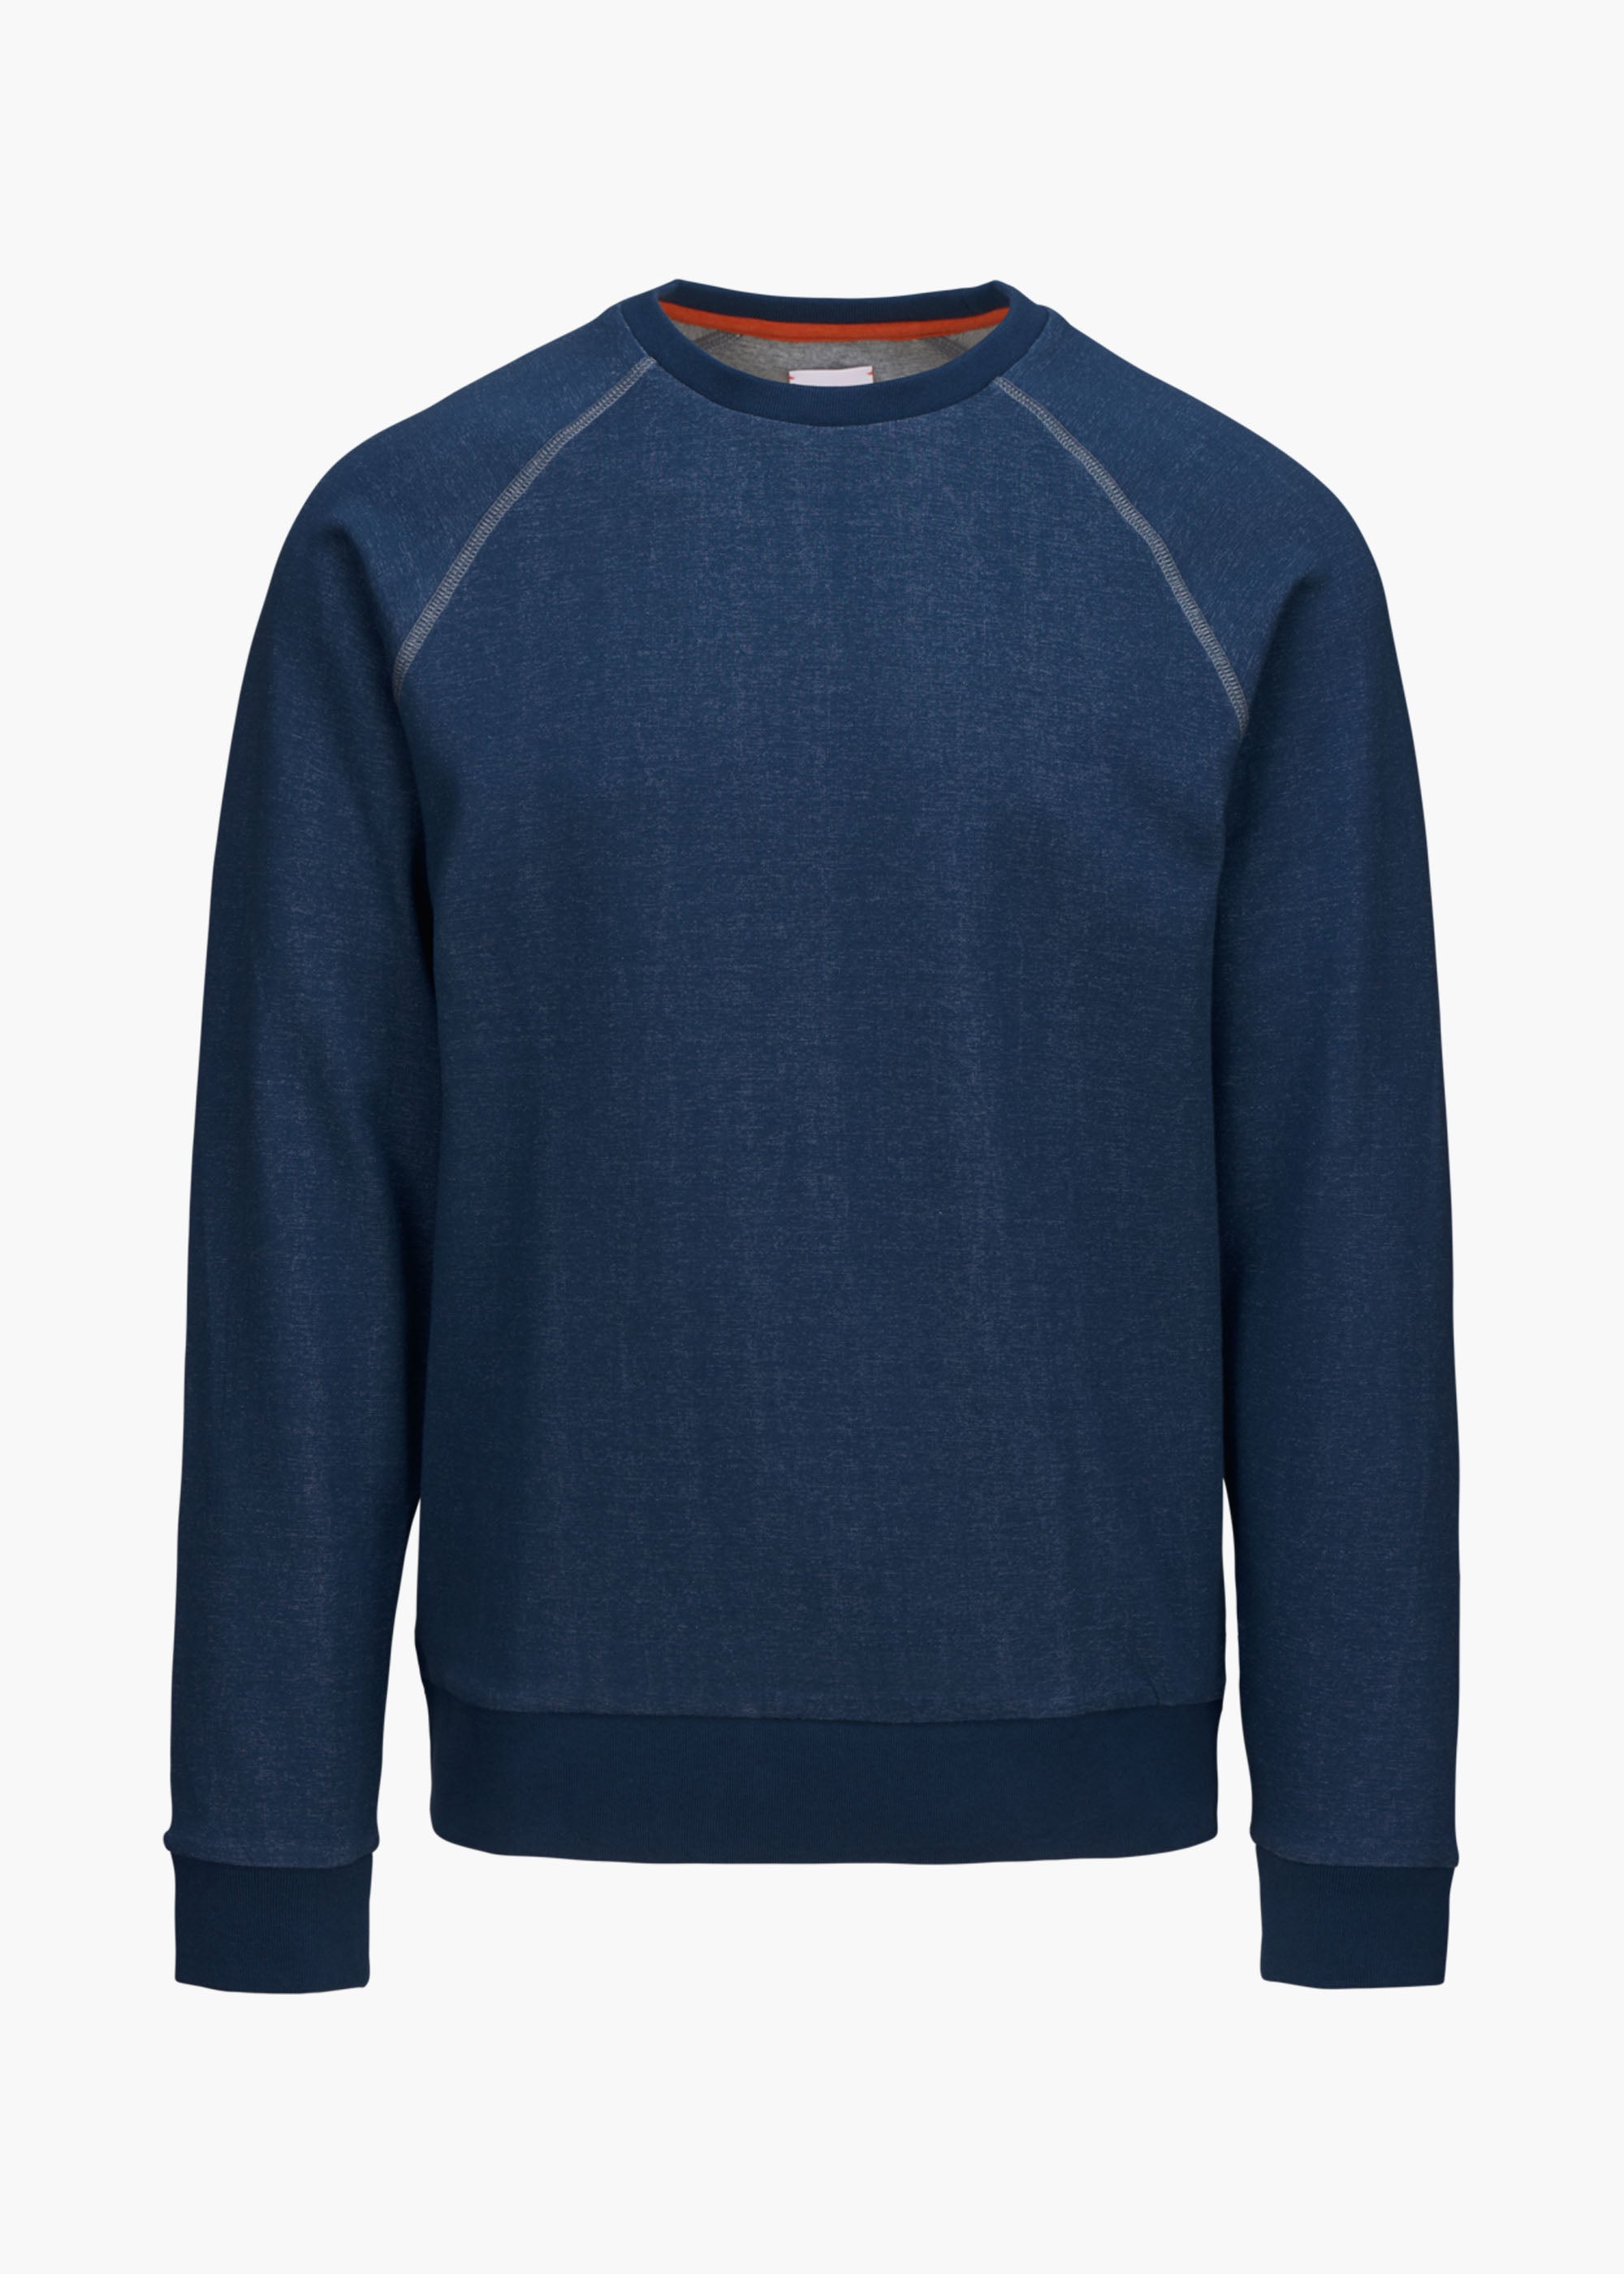 Octola Sweatshirt - background::white,variant::Lake Blue